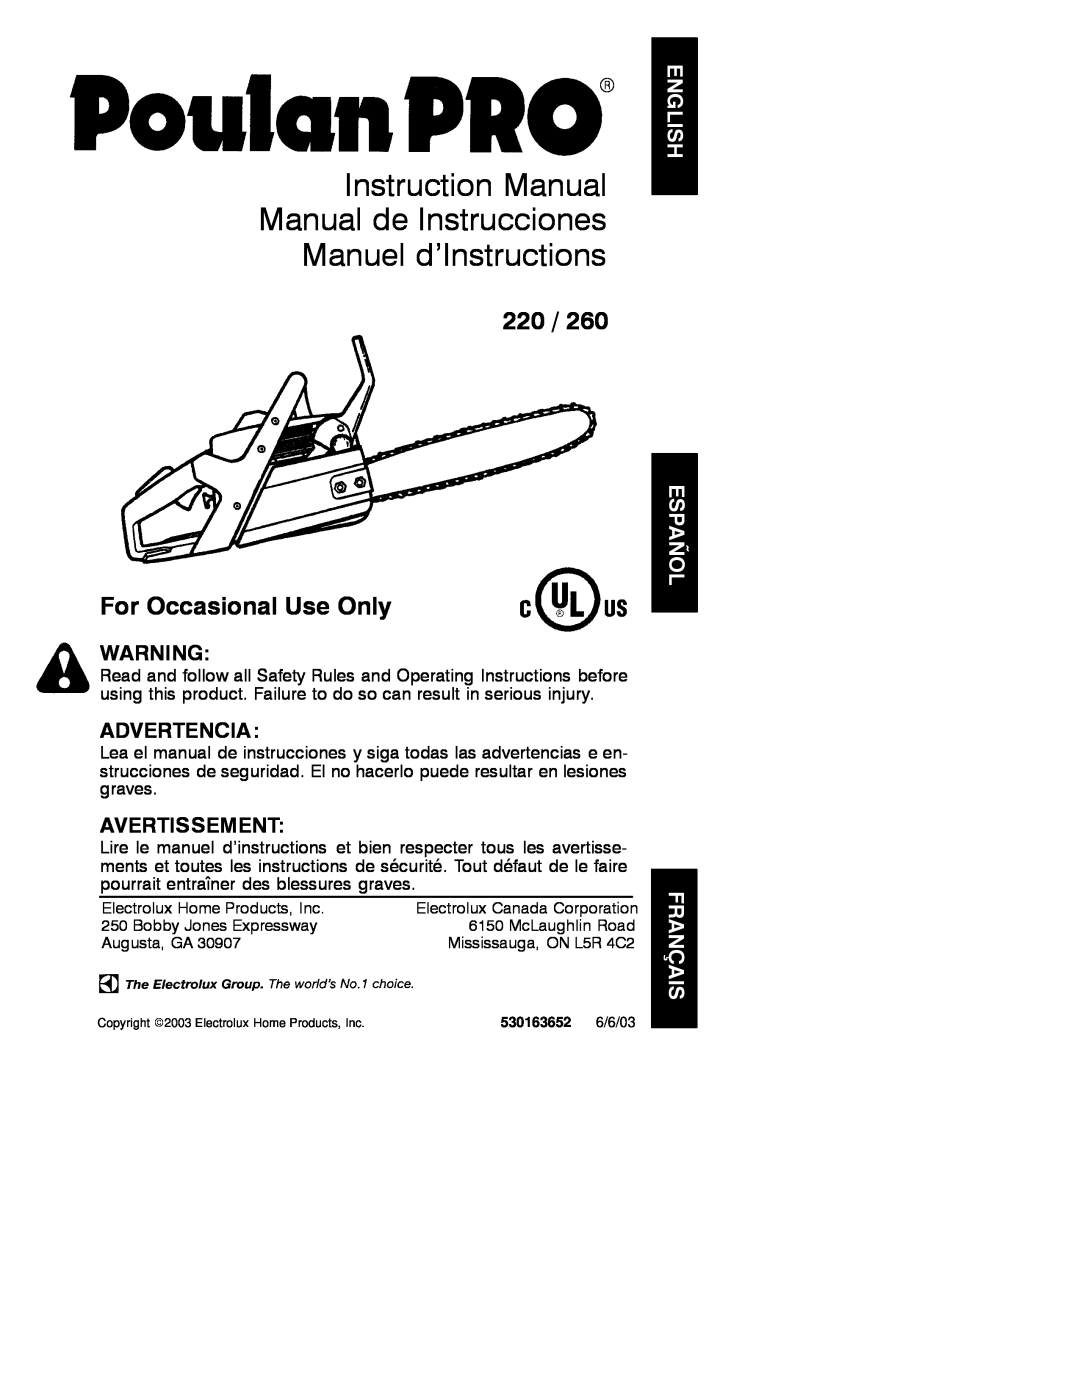 Poulan 530163652 instruction manual Instruction Manual Manual de Instrucciones Manuel d’Instructions, Advertencia 